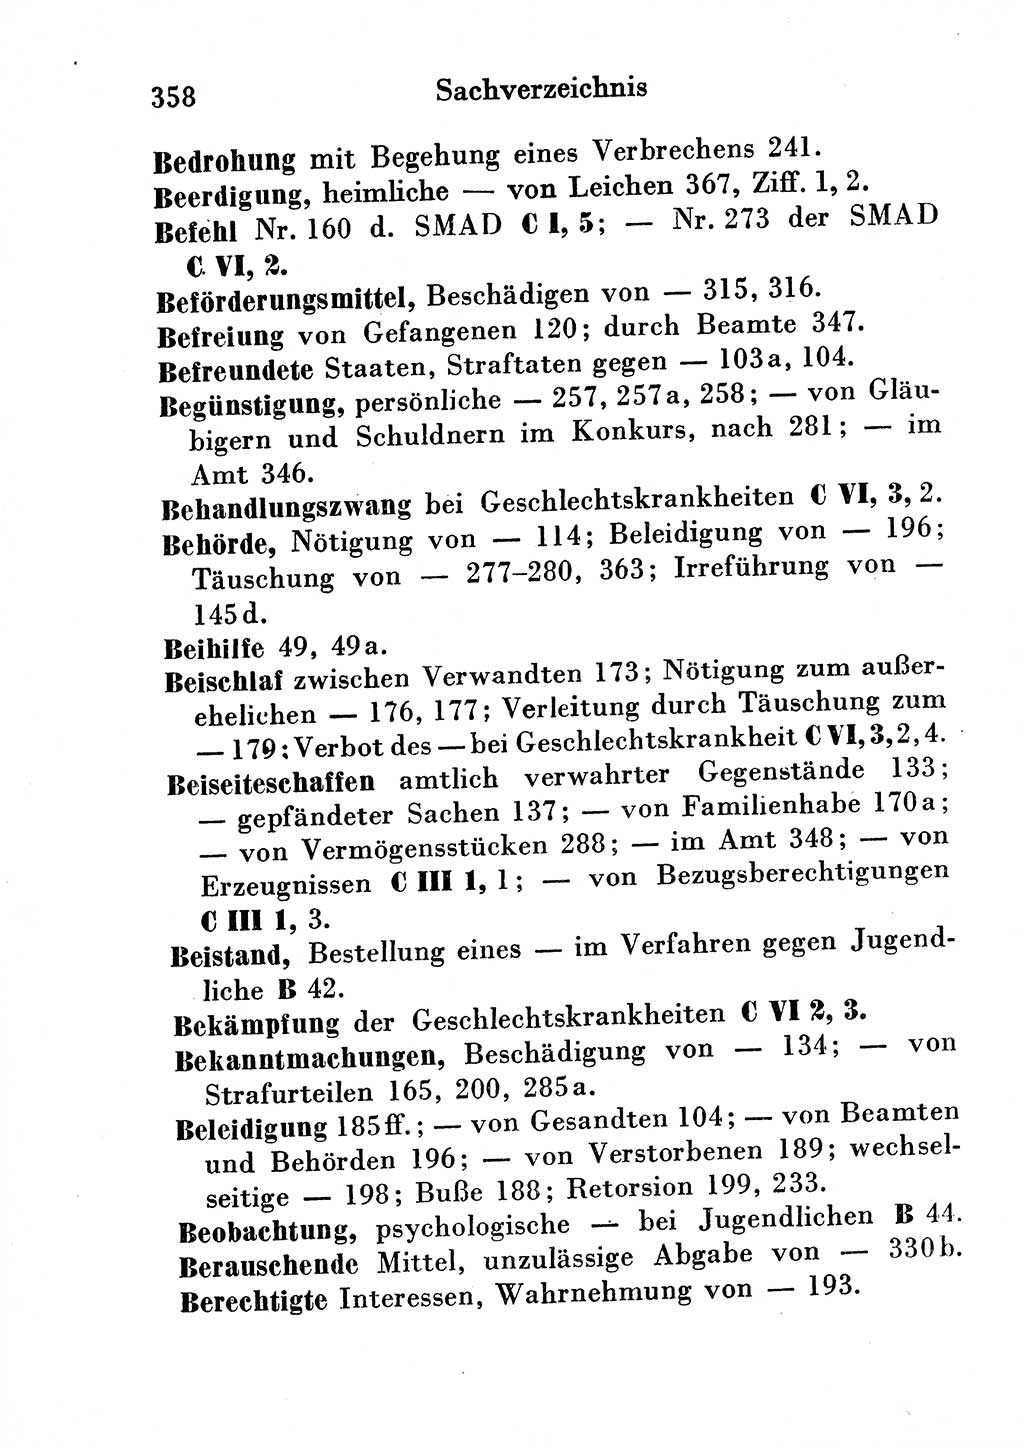 Strafgesetzbuch (StGB) und andere Strafgesetze [Deutsche Demokratische Republik (DDR)] 1954, Seite 358 (StGB Strafges. DDR 1954, S. 358)